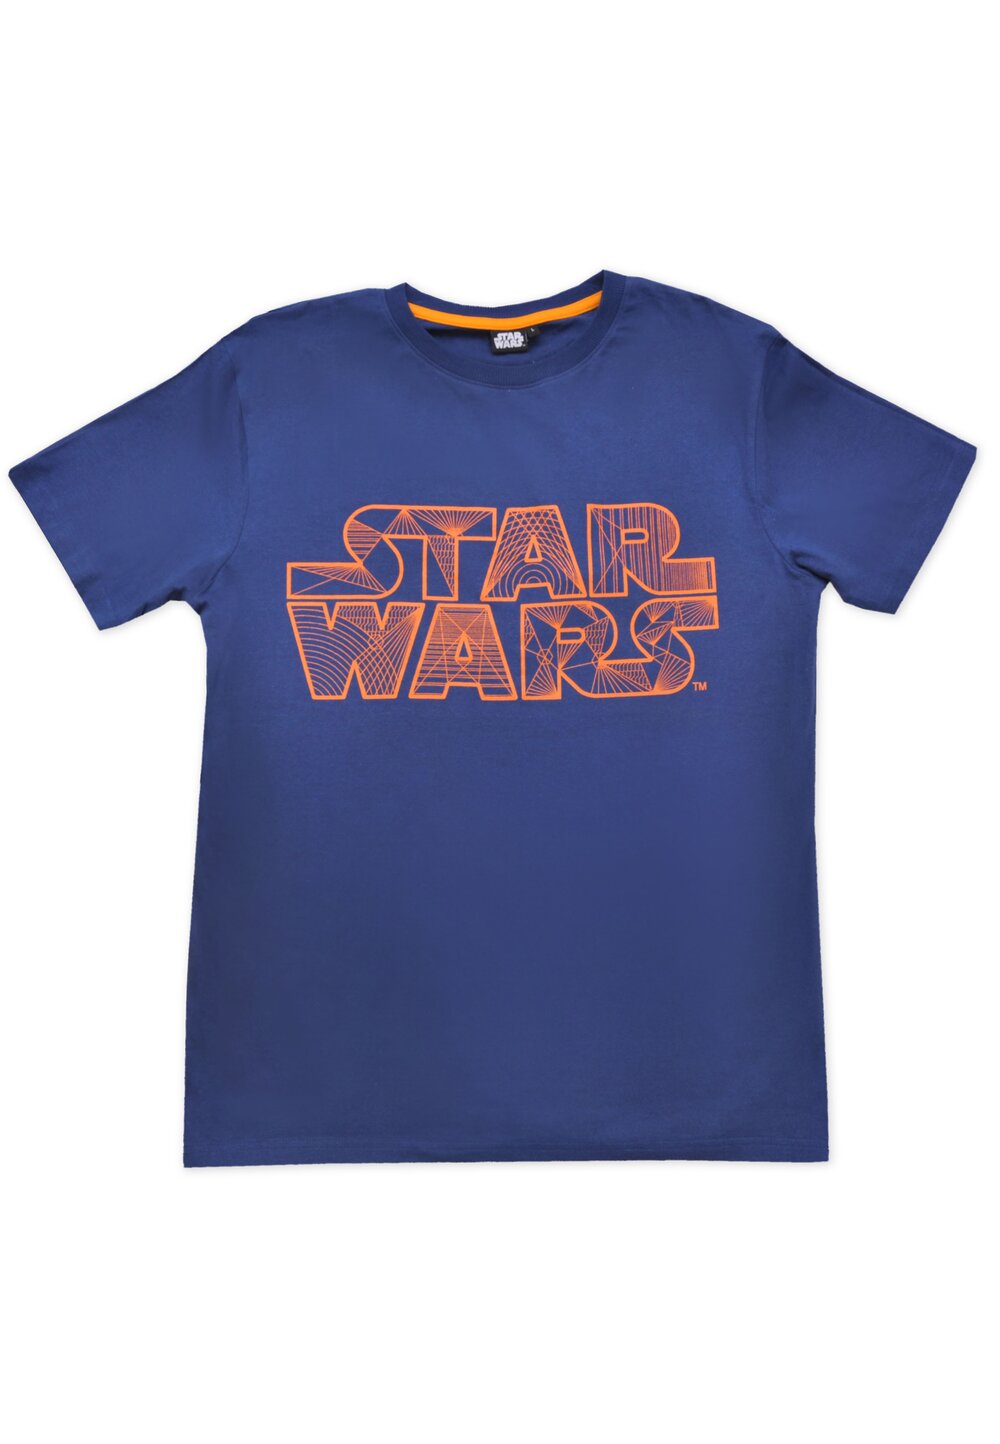 Tricou adulti, Star wars, albastru cu portocaliu imagine